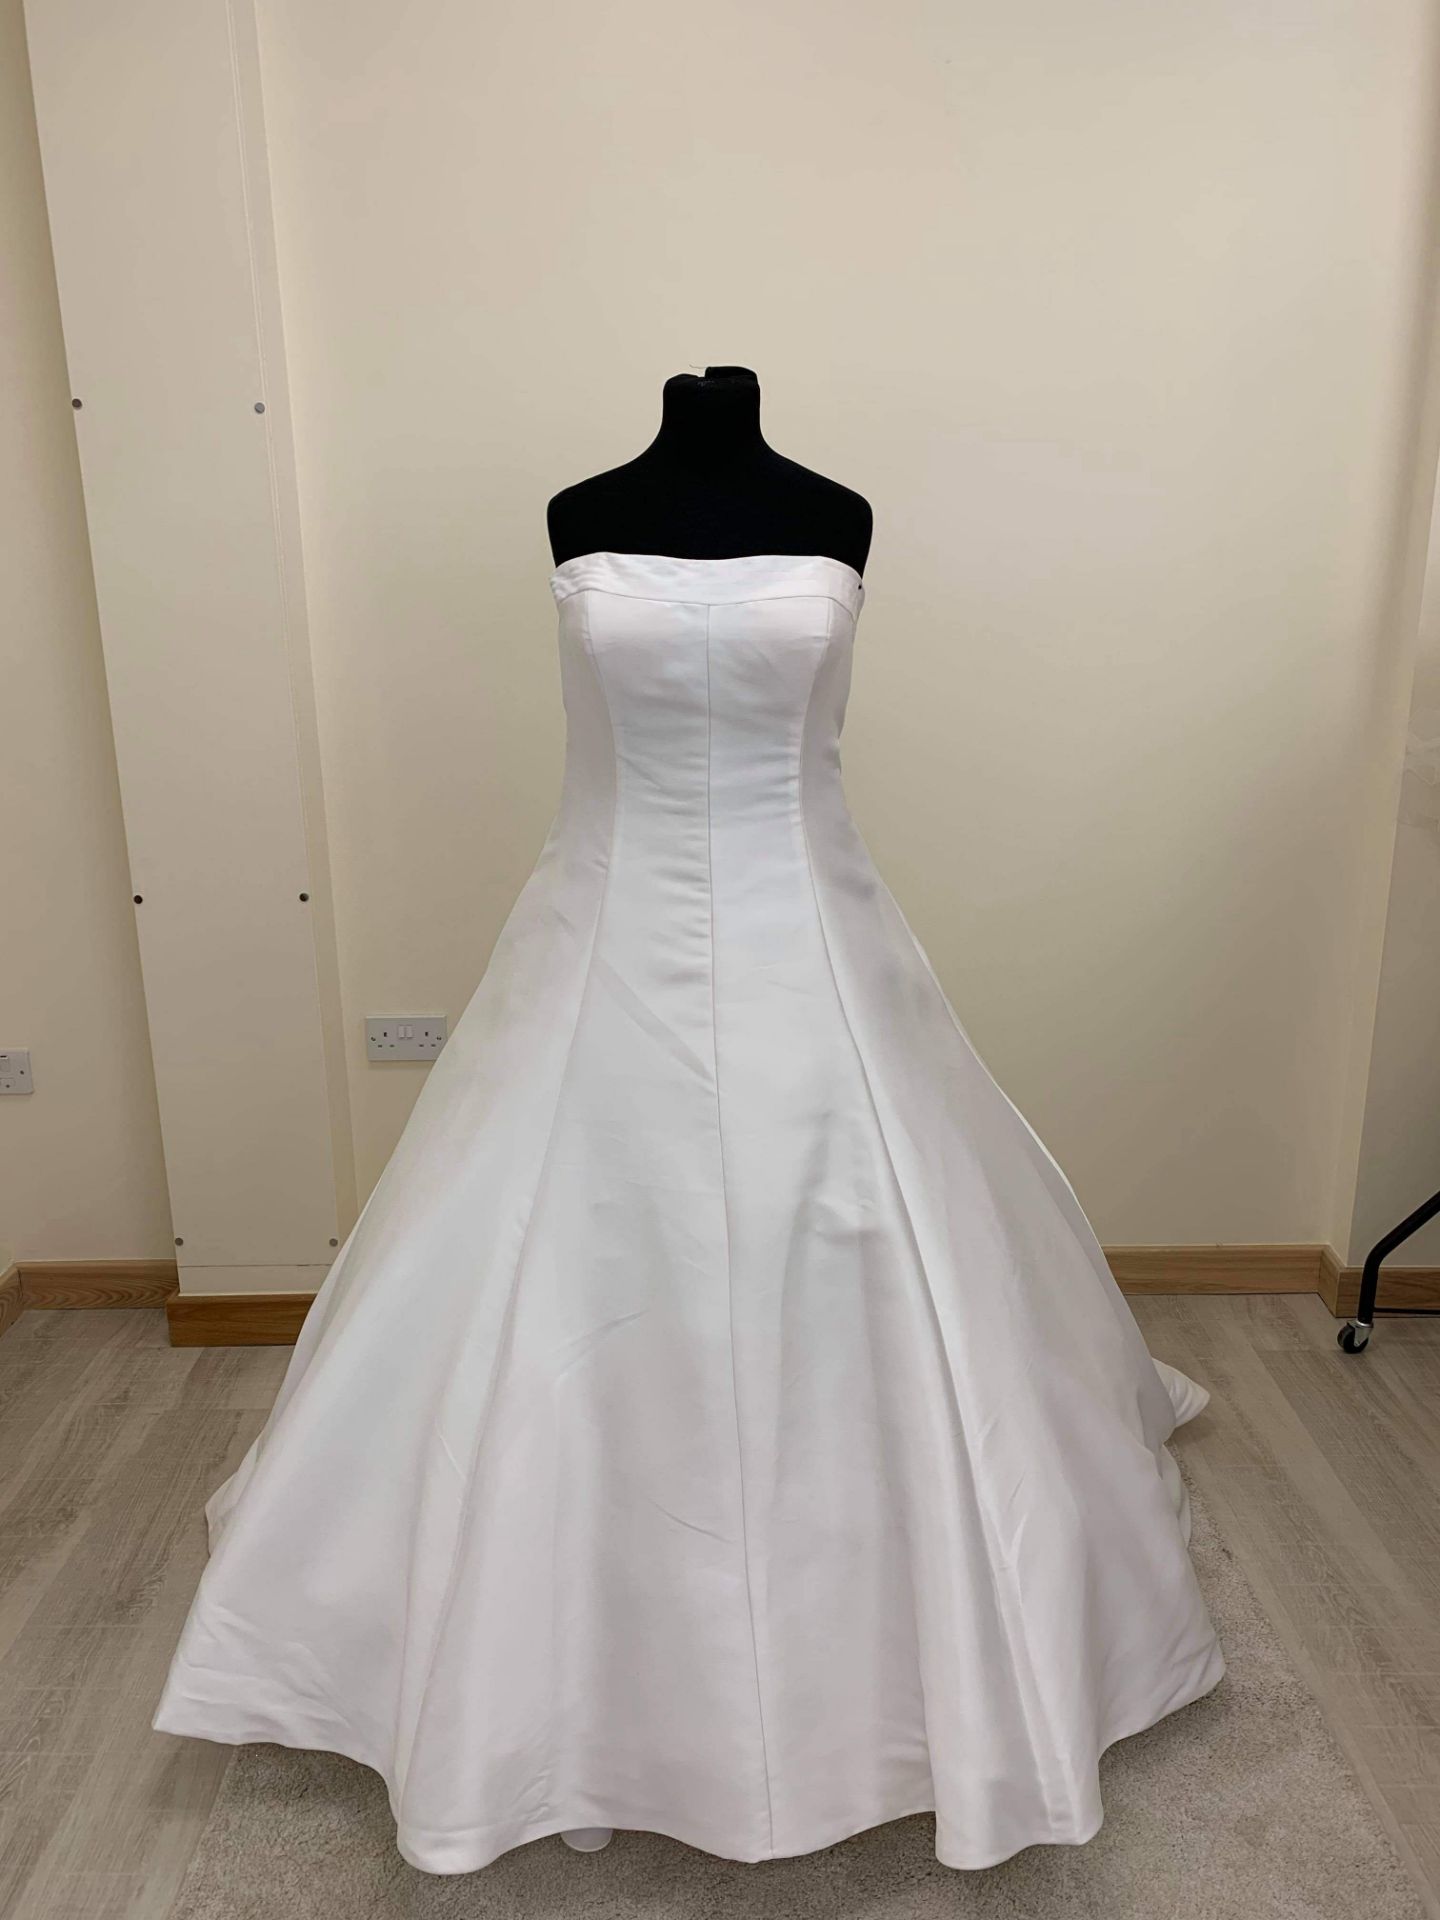 Mary's Bridal Wedding Dress Size 14 To 16, Mikado Wedding Dress RRP £1595